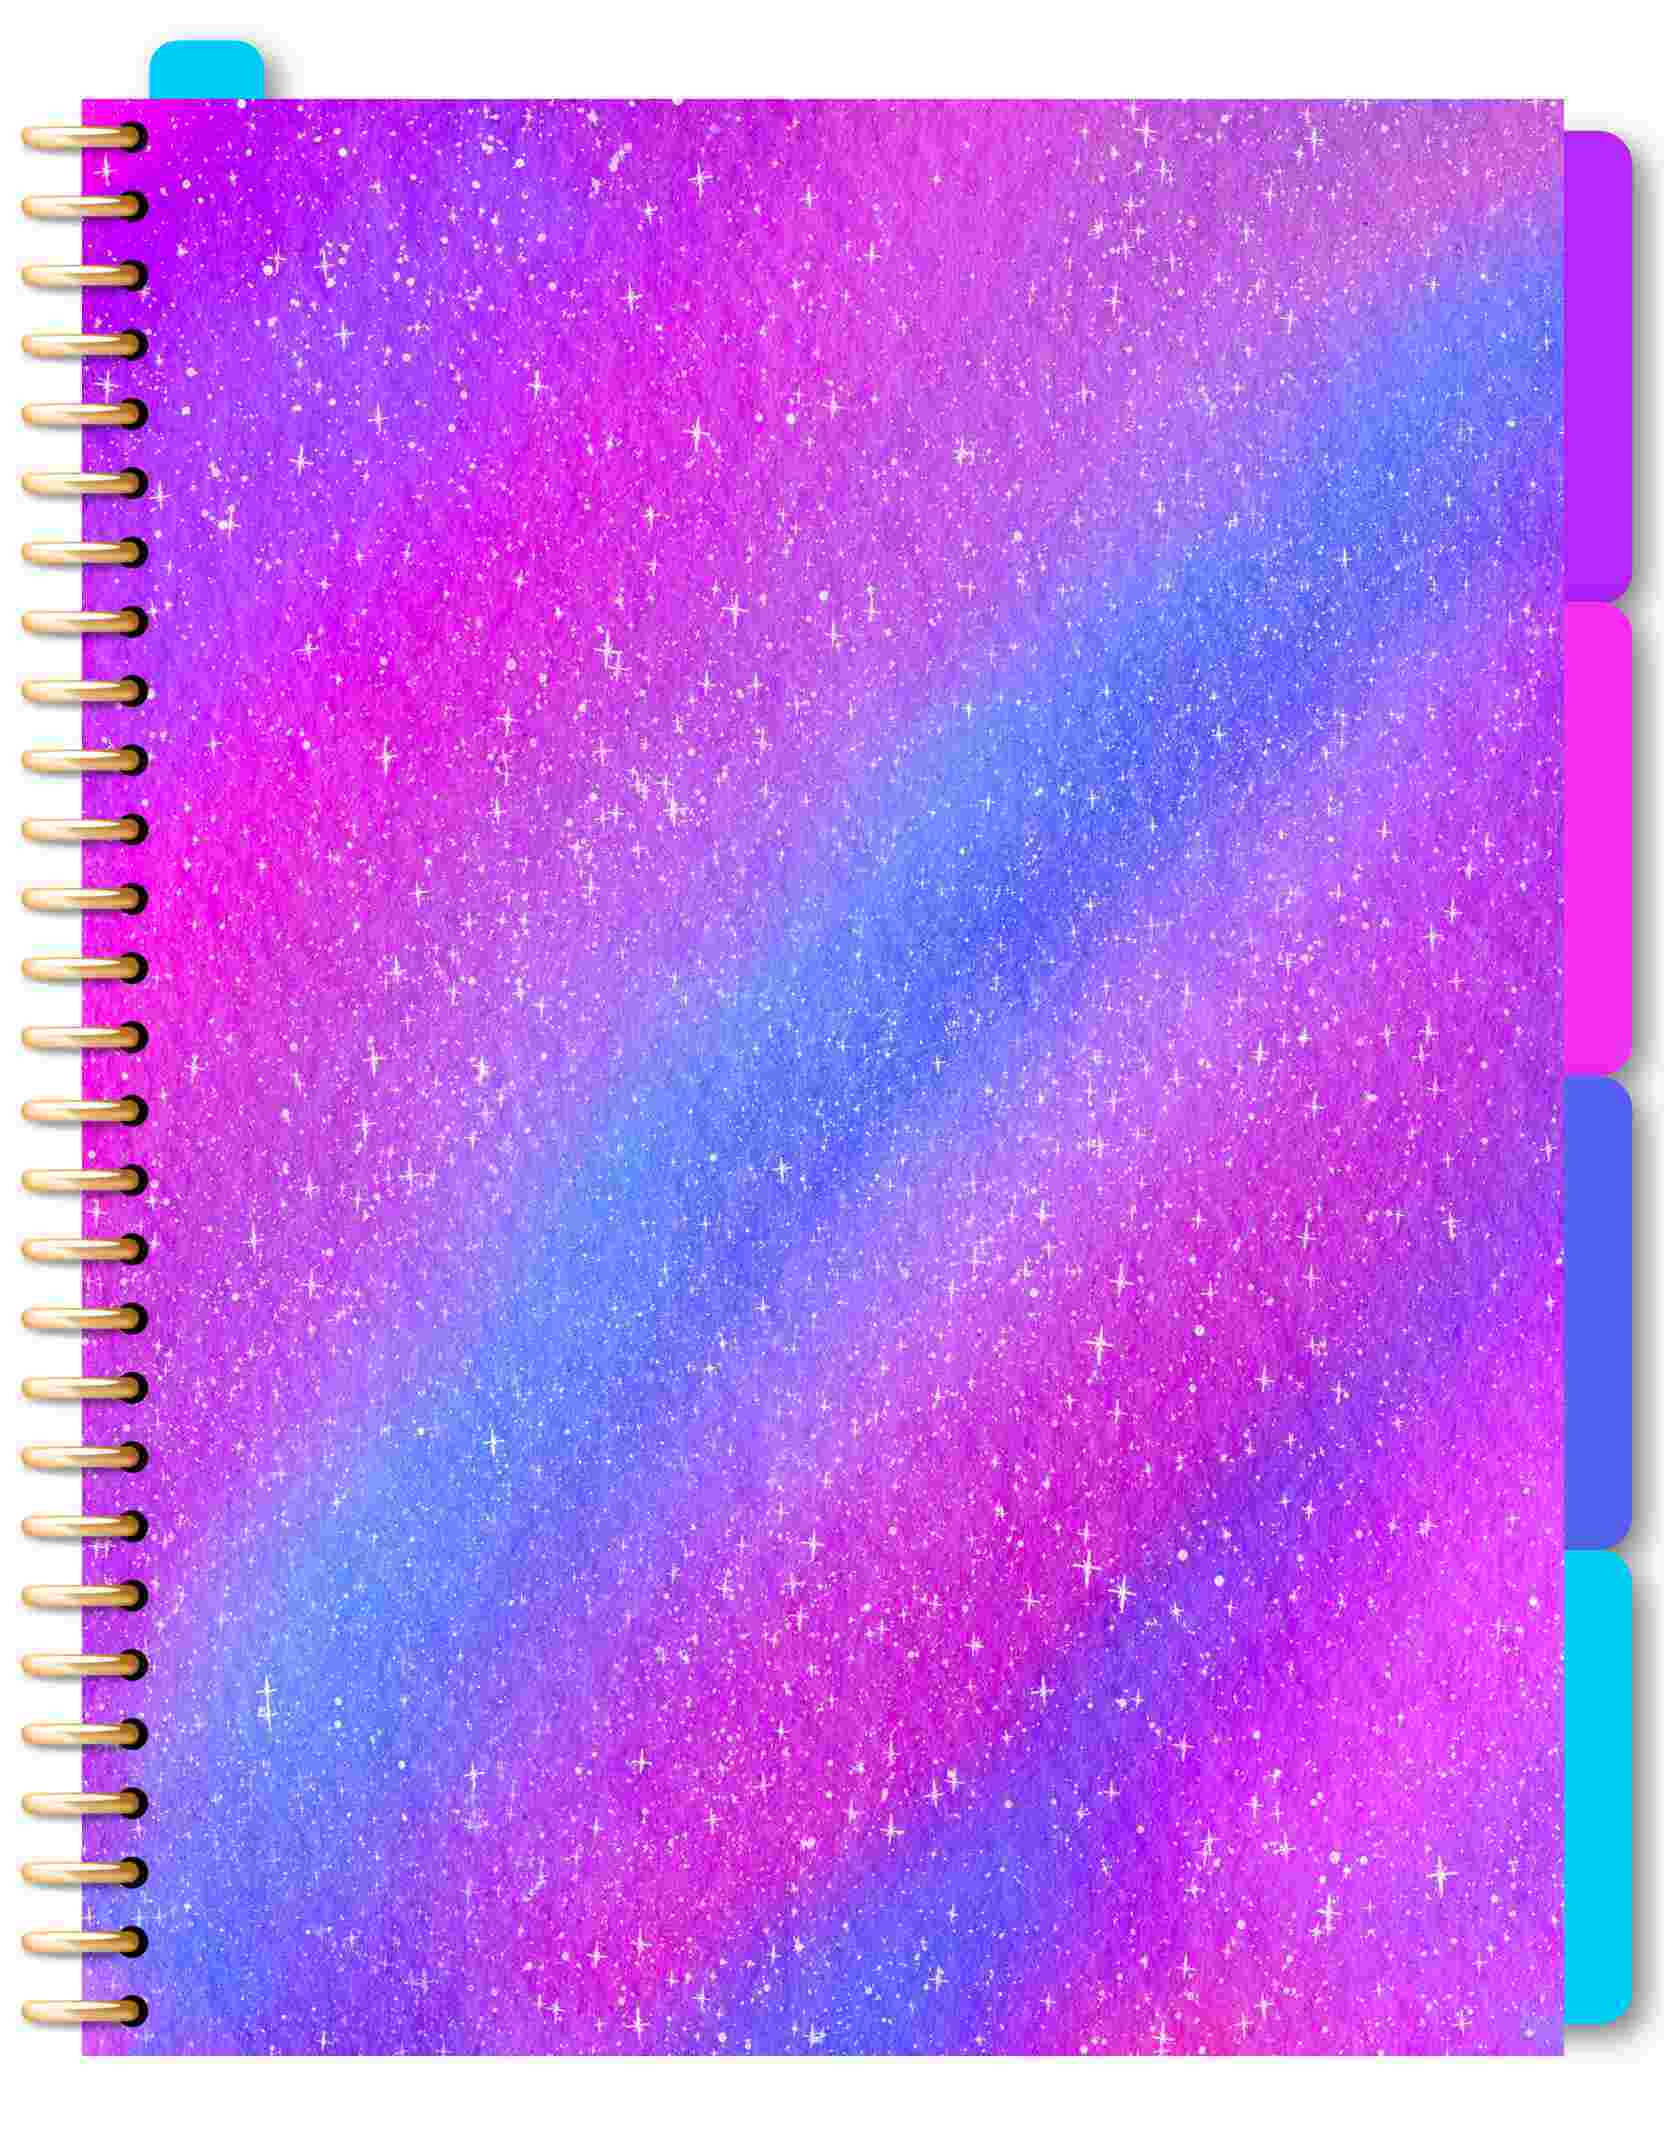 Free digital notebook